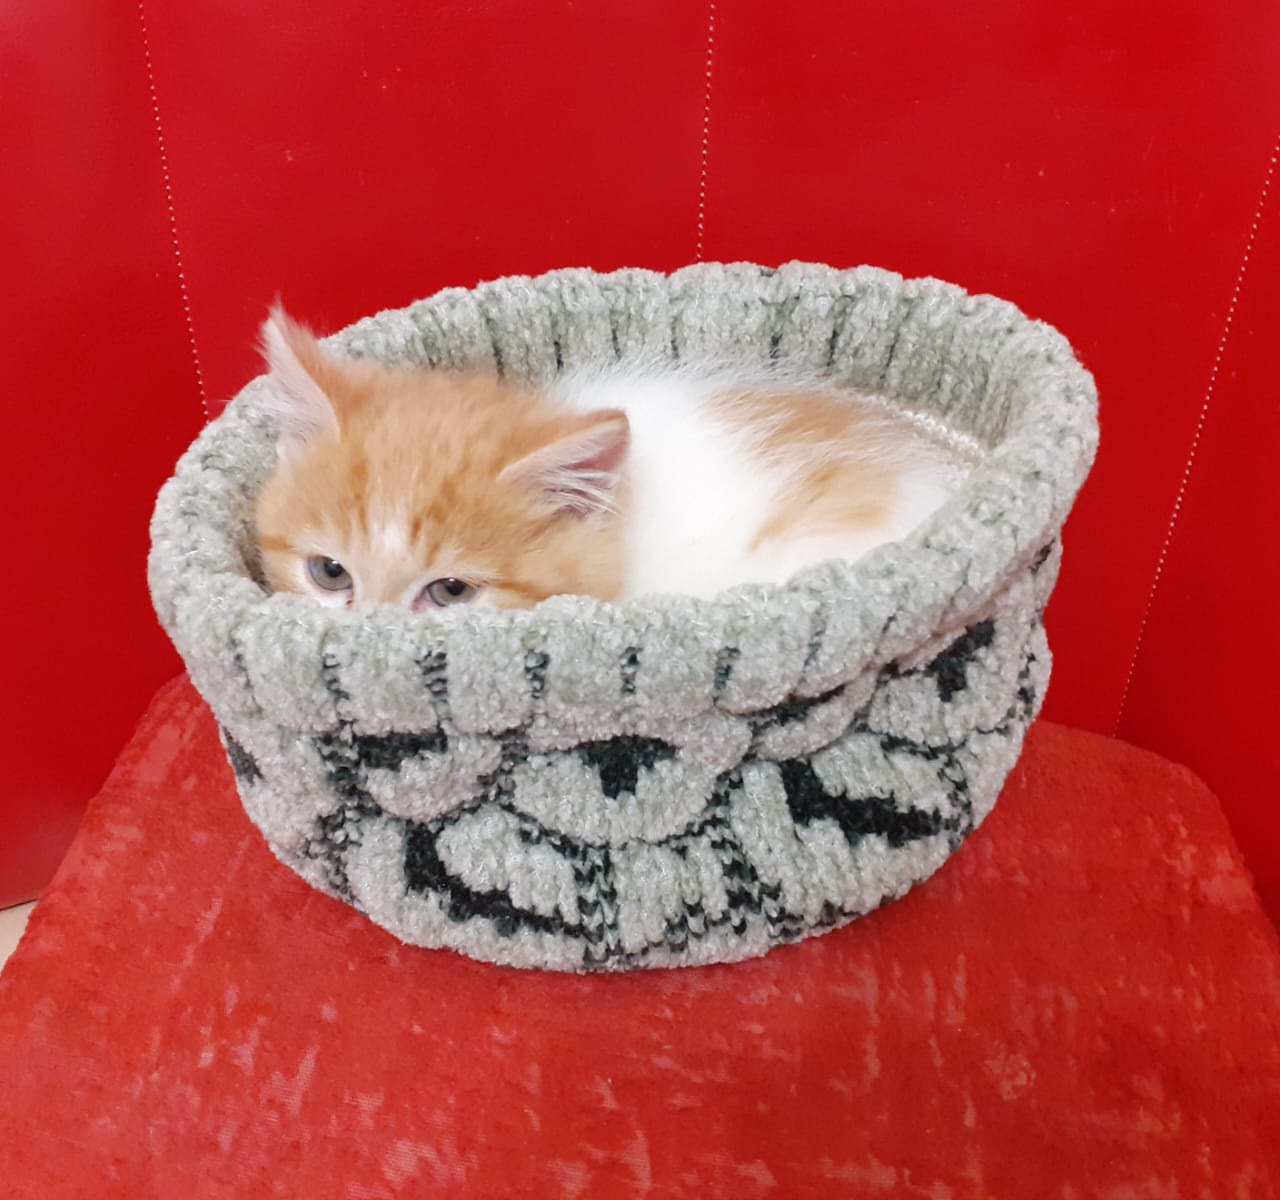 Фото питомца: кот Рыся прячется в шапке